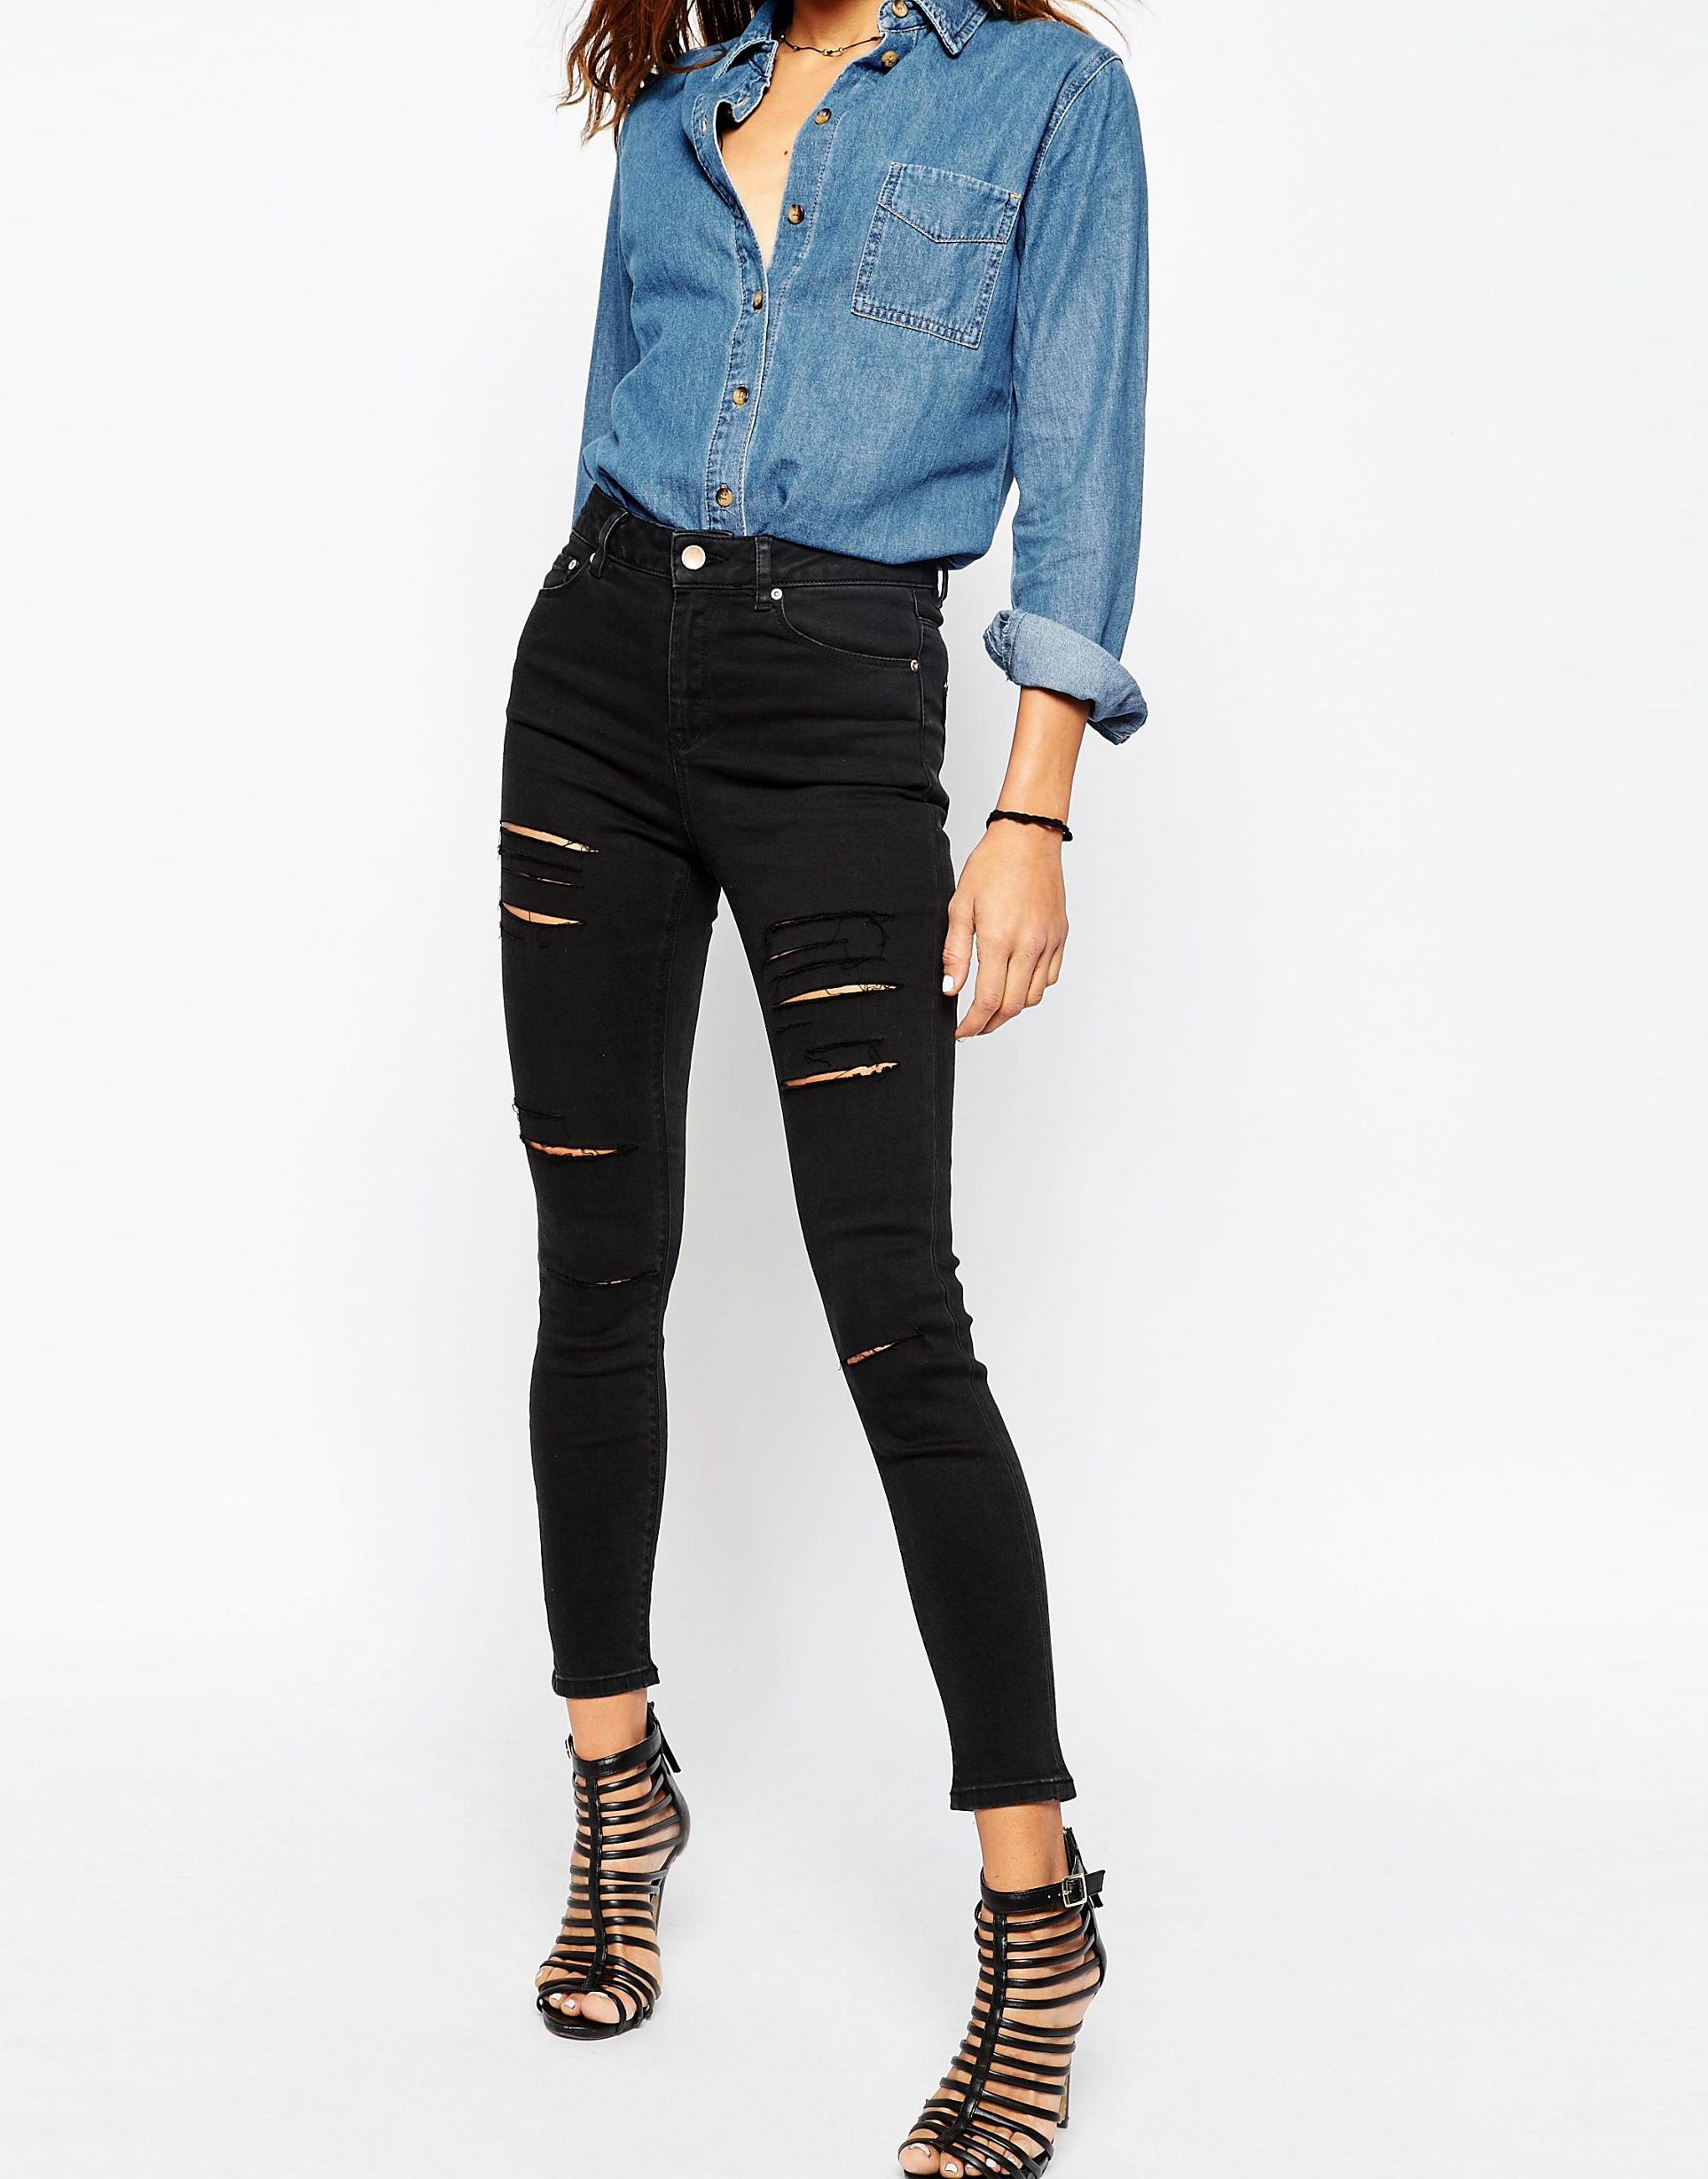 Чёрные джинсы женские короткие